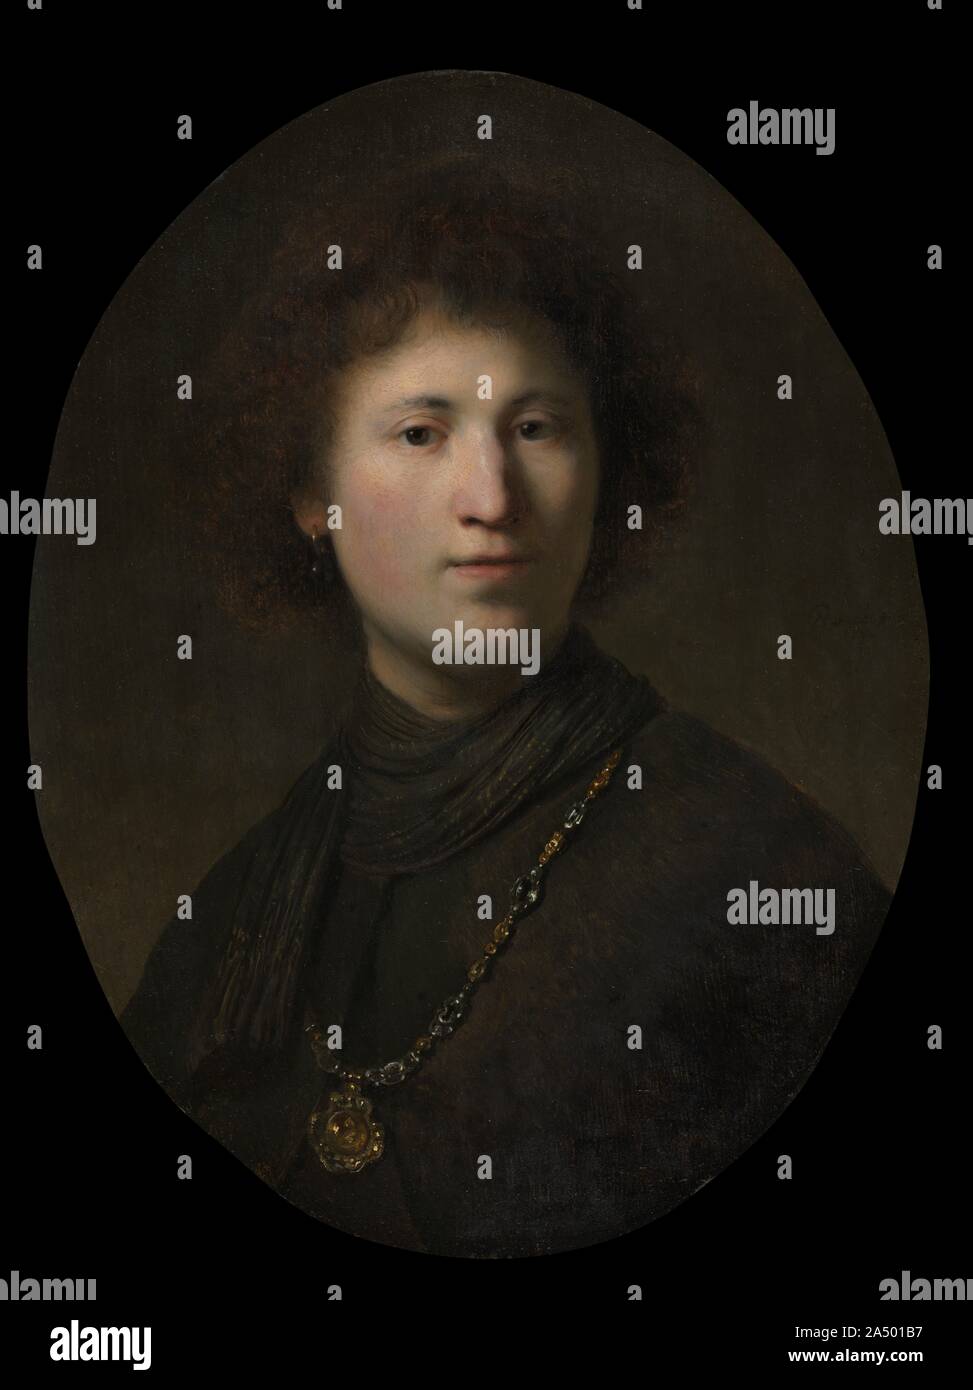 Un jeune homme avec une chaîne, ch. 1629 ou 1632. Cette peinture est un exemple de tronie , un mot néerlandais qui signifie "chef" ou "l'expression du visage." Tronies n'étaient pas destinées à être identifiables des portraits, mais les enquêtes de l'apparence faciale artistique et costumes de fantaisie. En particulier dans les années 1630, Rembrandt utilisé ce format populaire pour explorer différents effets d'éclairage et les expressions faciales. Ici, le fort contraste d'ombre et de lumière façonne les contours du jeune homme&# x2019;s visage ; accessoires inhabituels tels que le foulard rayé et pendentif scintillant sur un jewelled Banque D'Images